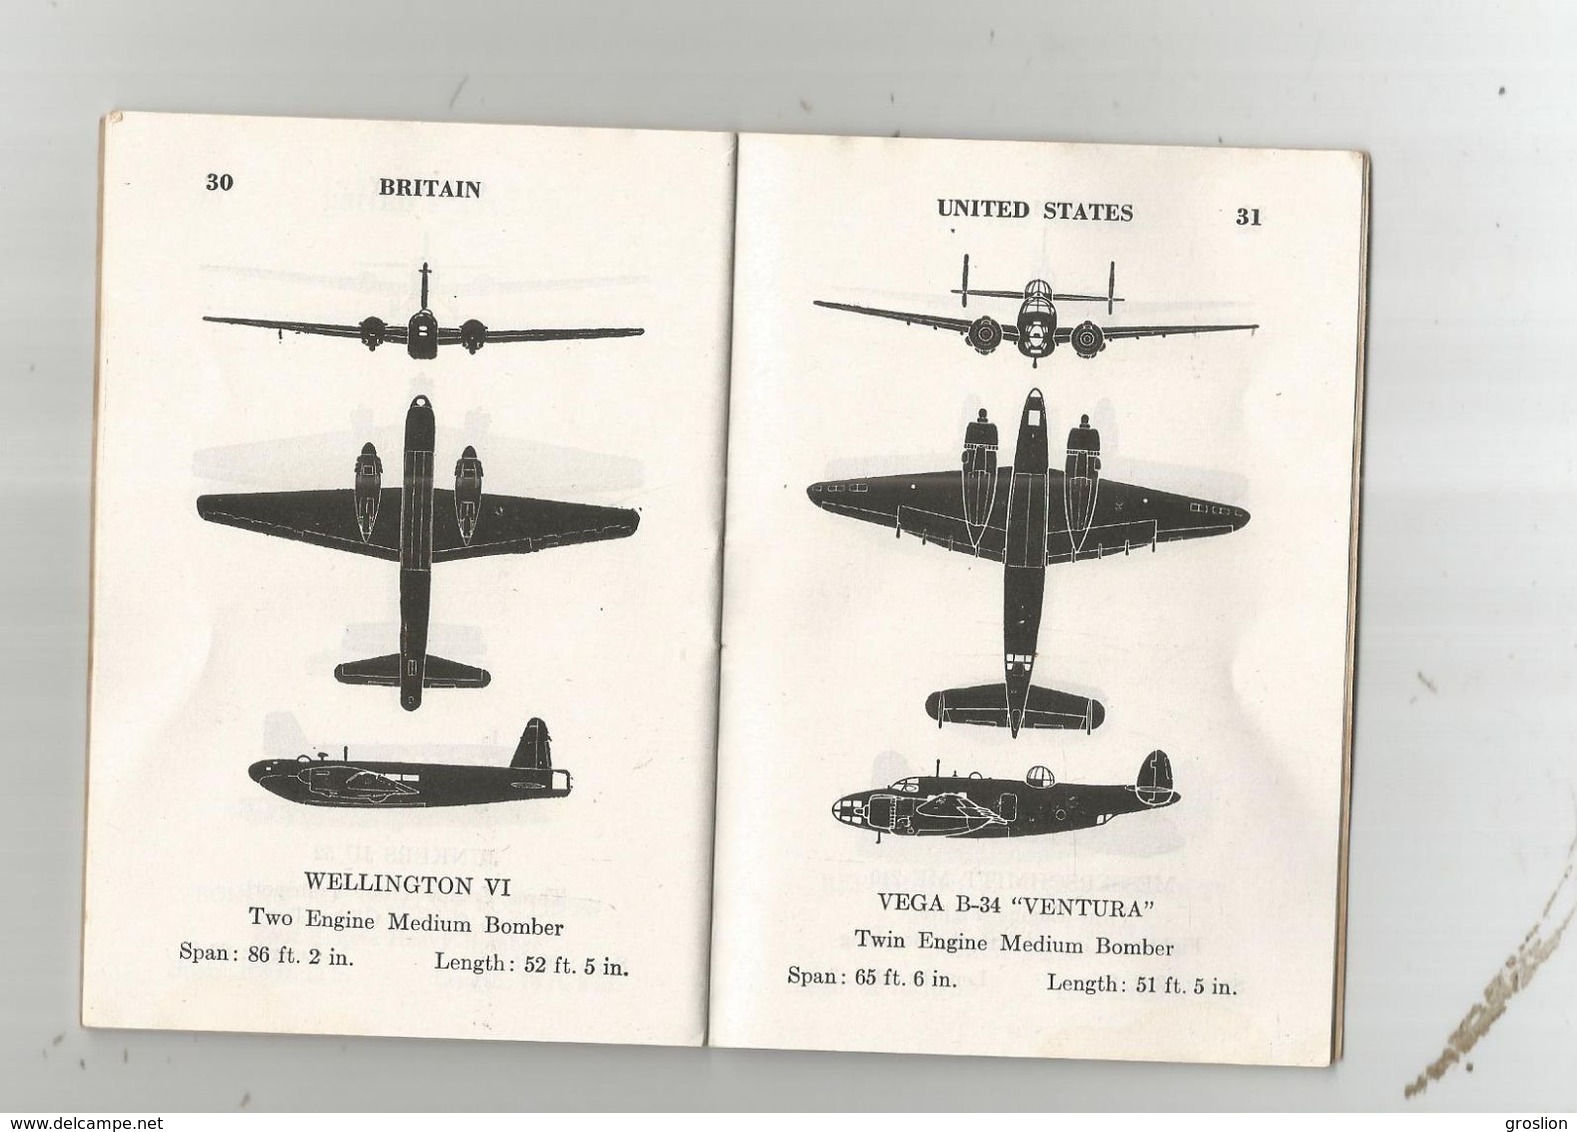 AIRCRAFT RECOGNITION GUIDE WAR DEPARTMENT 1943 FOR US SOLDIERS.LIVRET 1943 POUR SOLDATS U S DE RECONNAISSANCE AVIONS